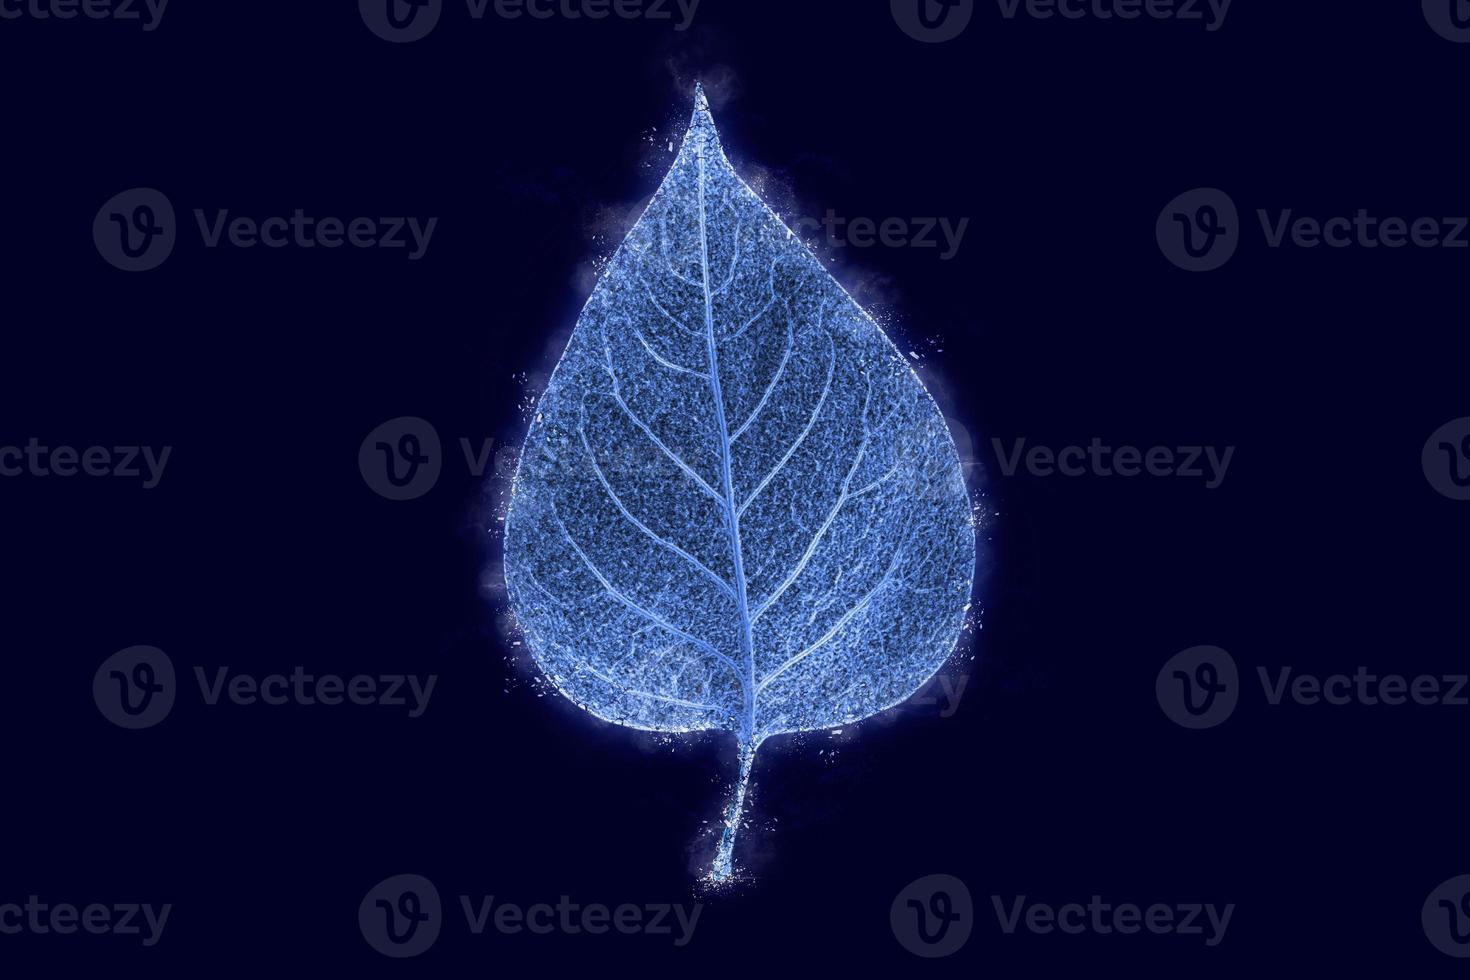 une feuille d'arbre de syringa glacée congelée isolée sur fond bleu foncé, effet couvert de glace bleue sur la feuille photo